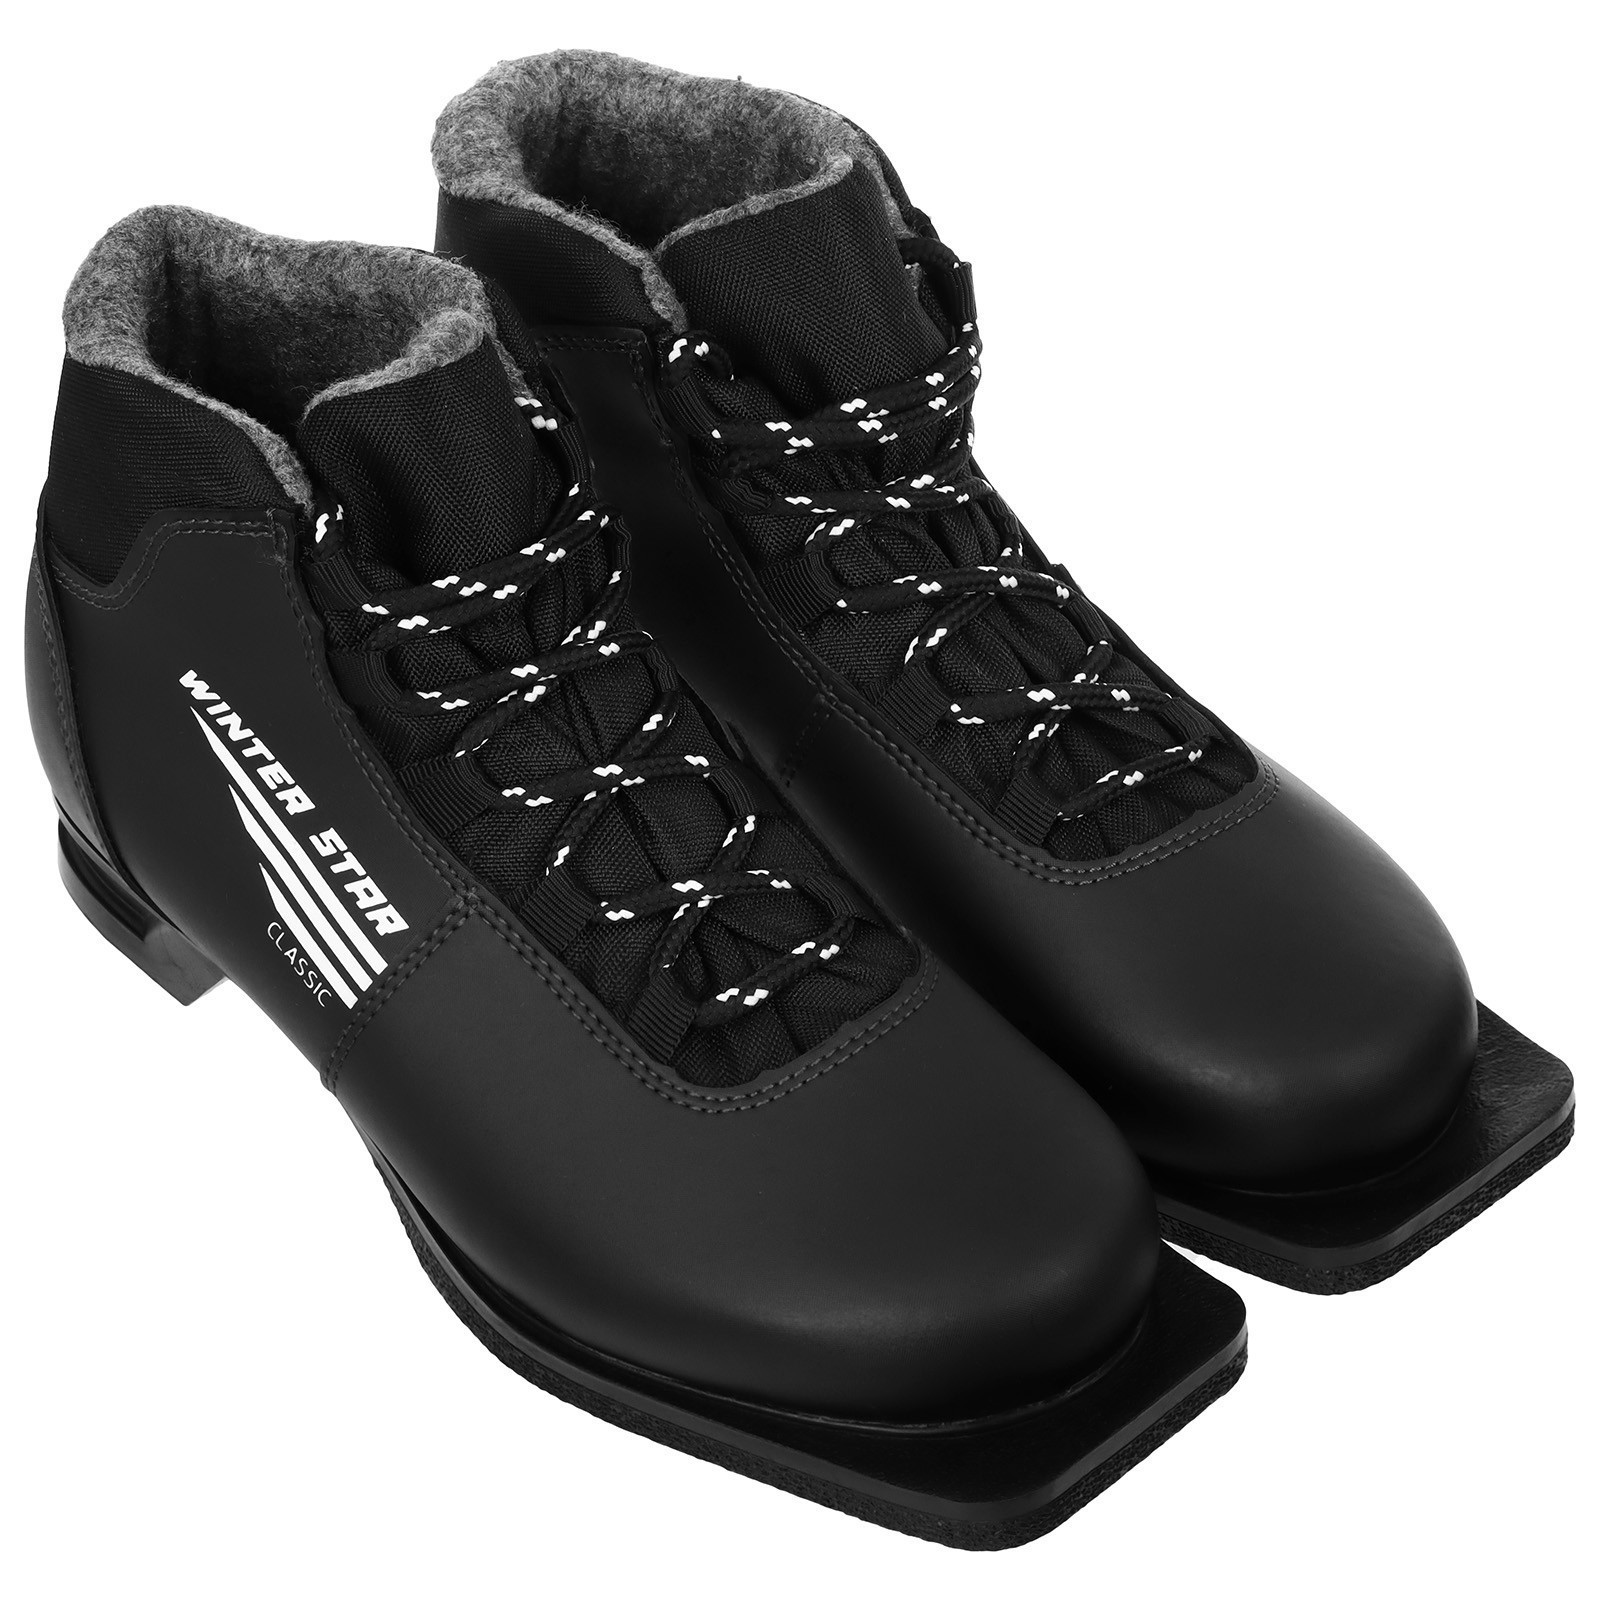 Ботинки лыжные Winter Star classic, NN75, цвет чёрный, лого белый/серый